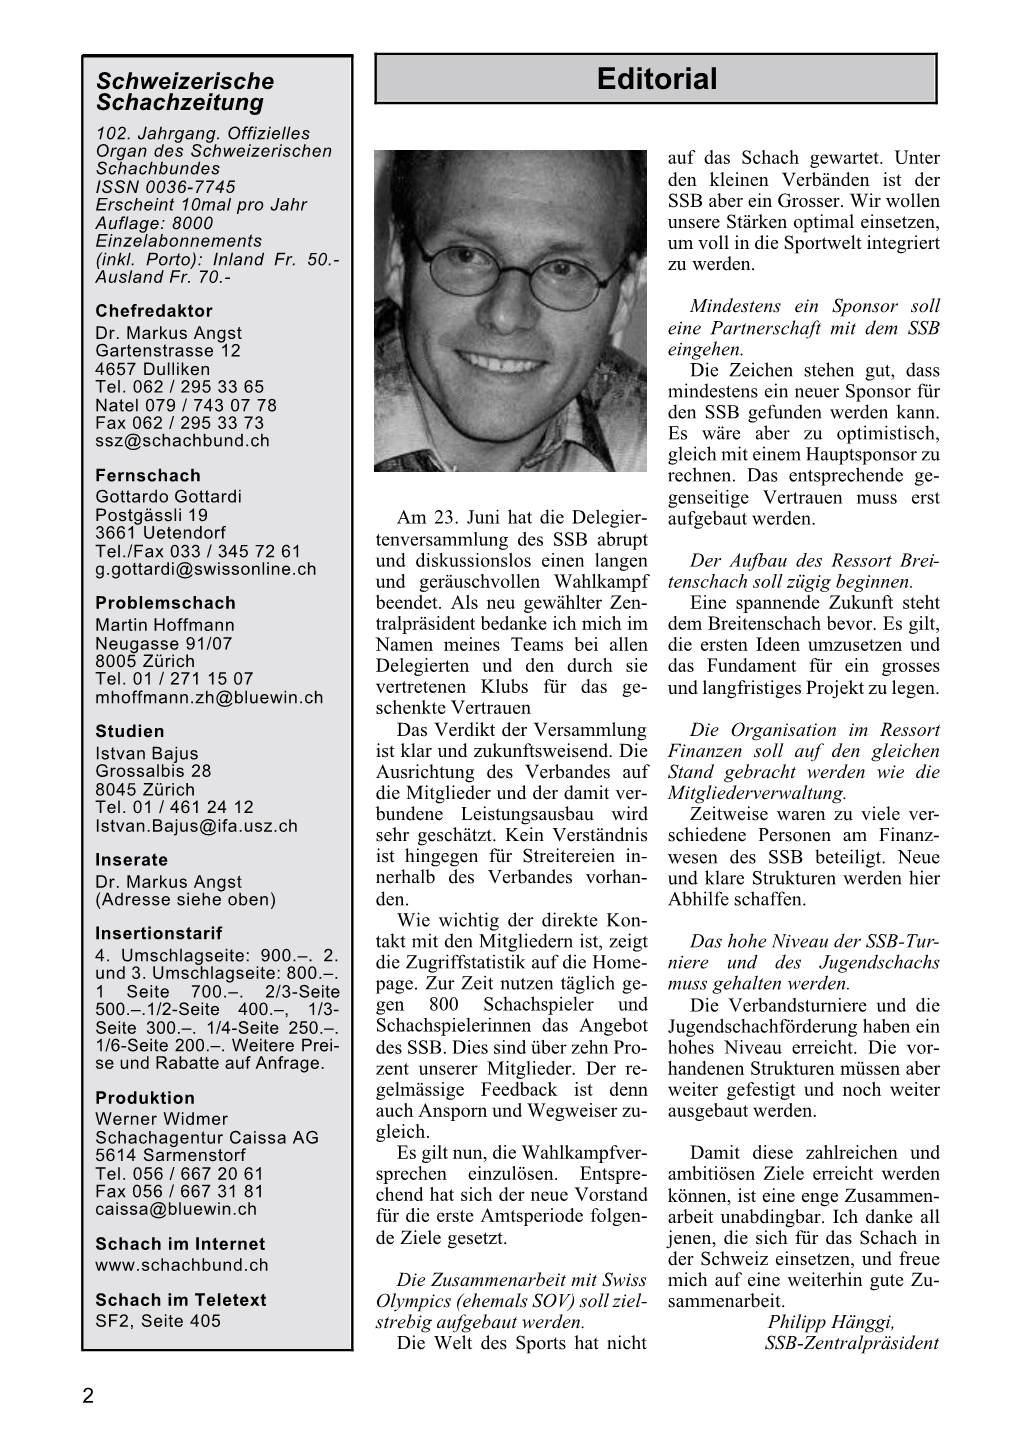 Schweizerische Schachzeitung 2001